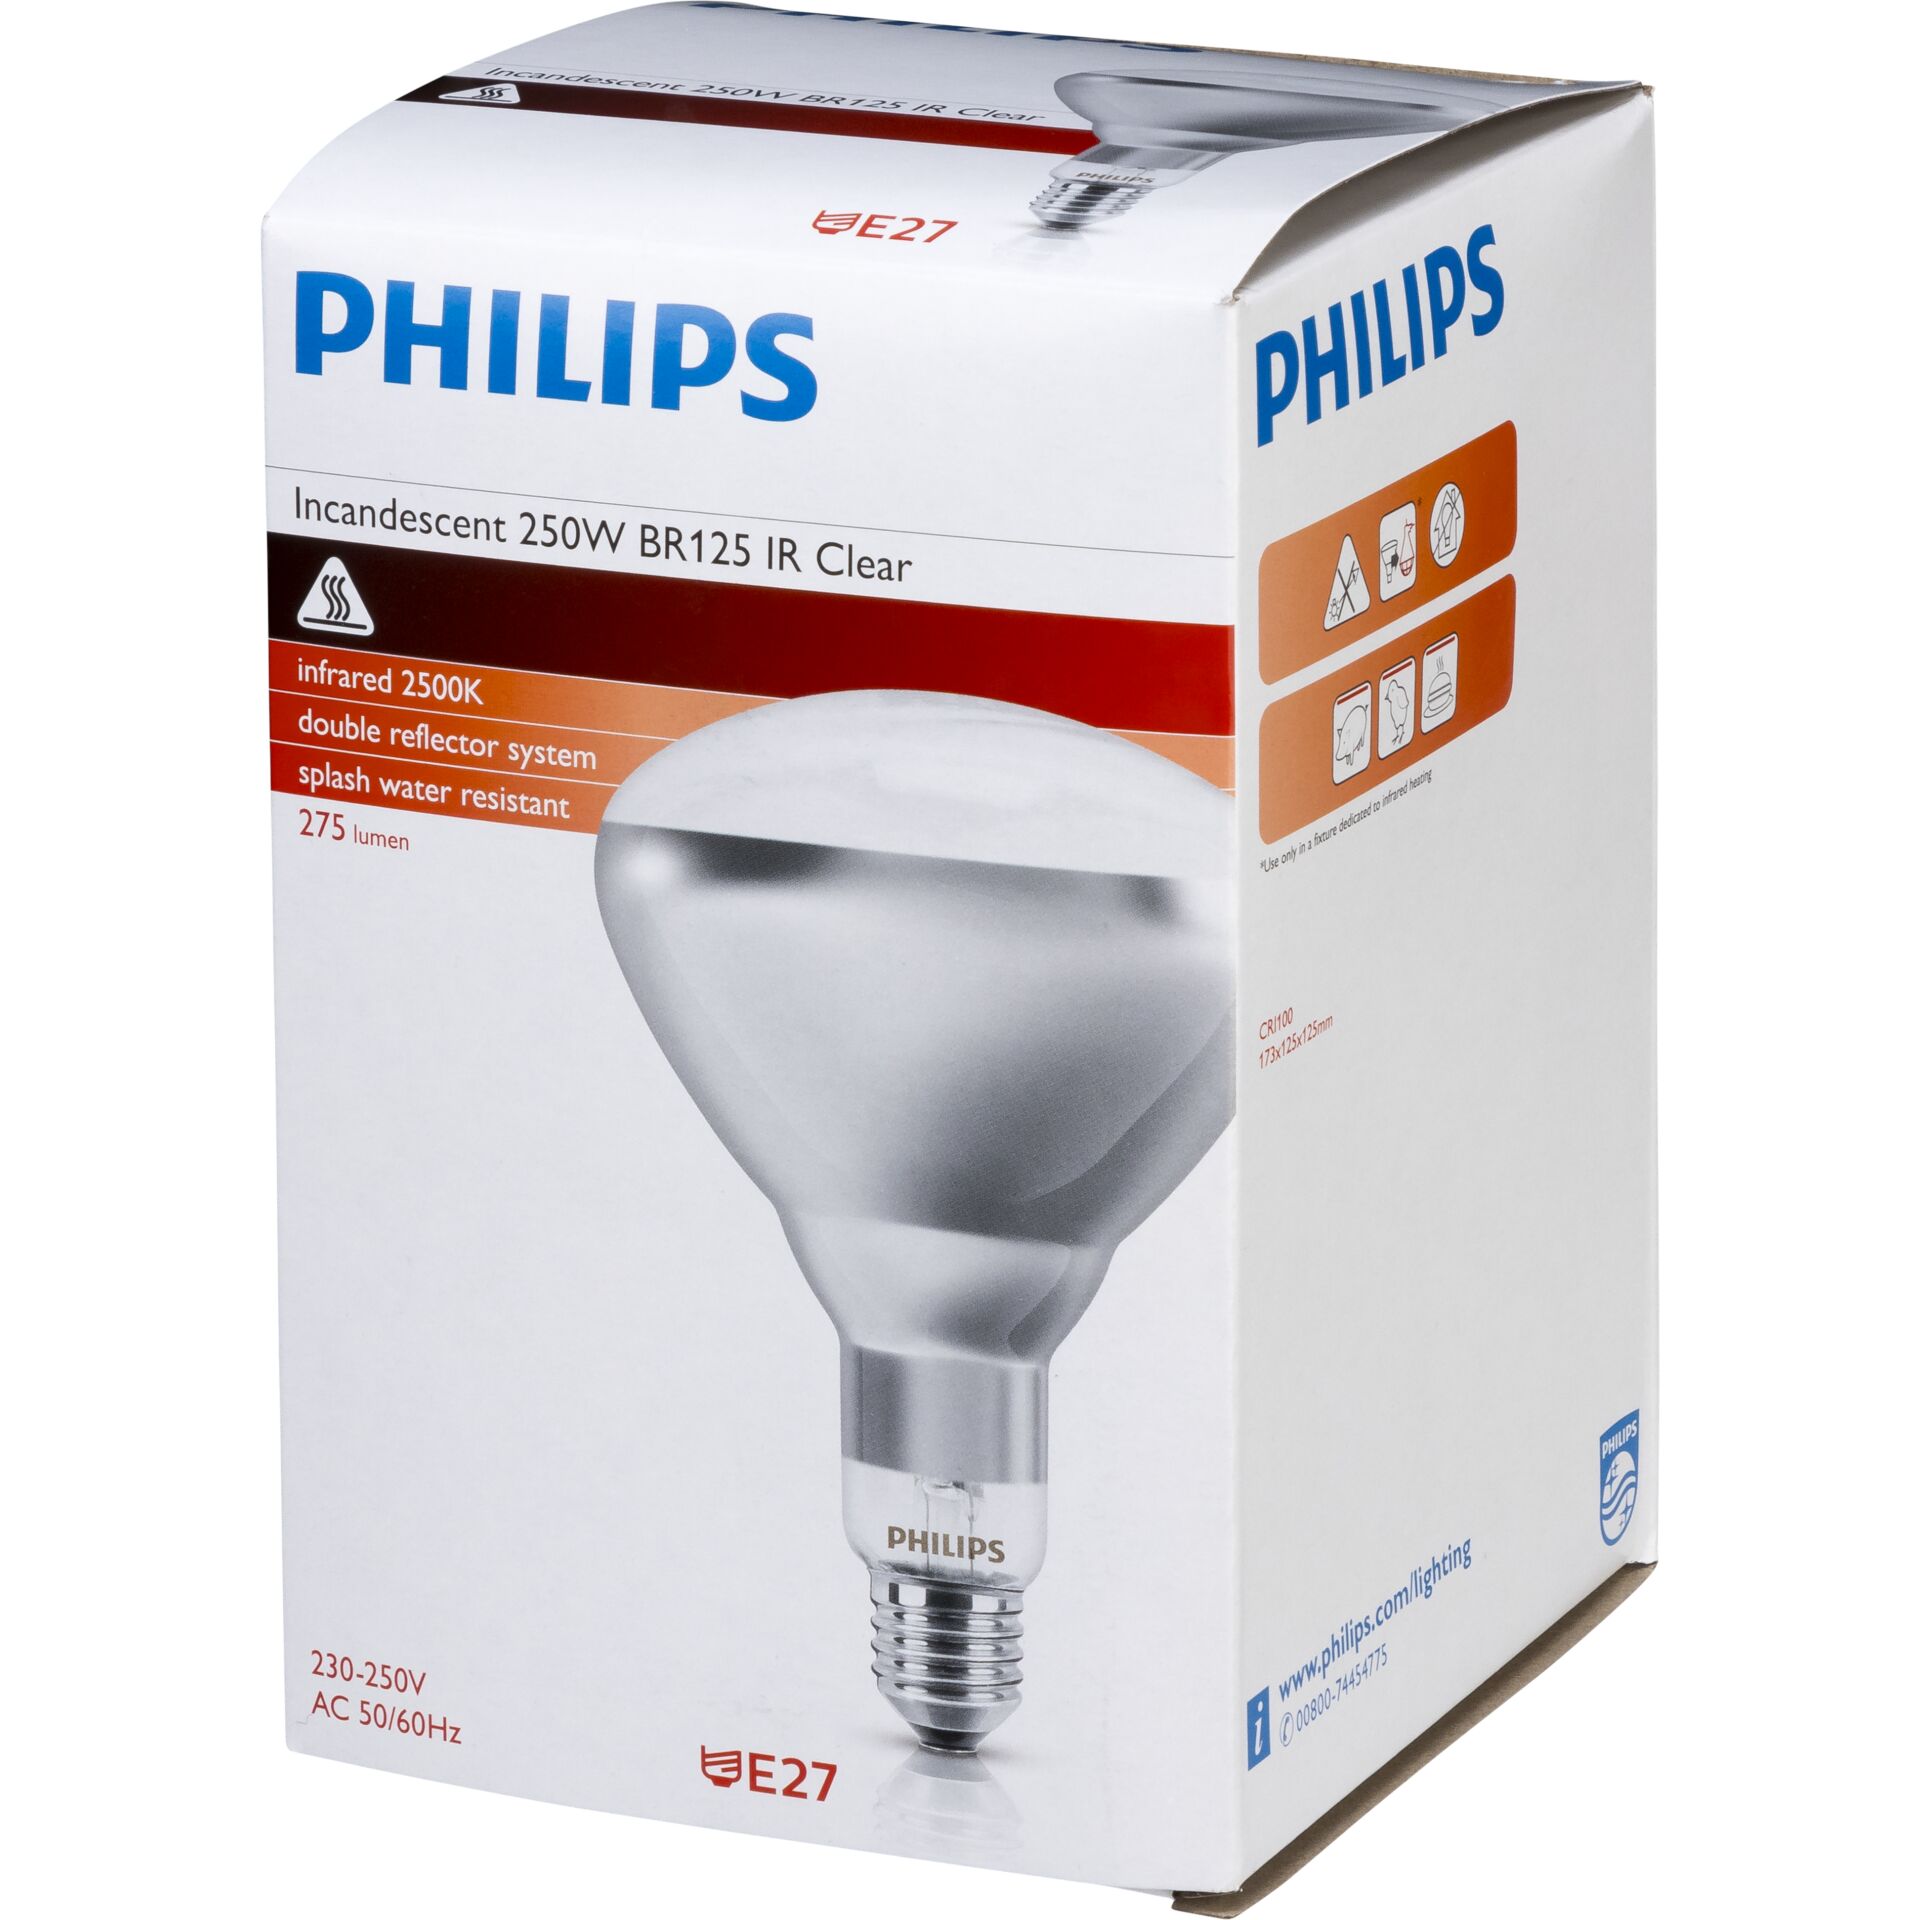 Philips lampada infrar. BR125 IR 250W E27 230-250V CL